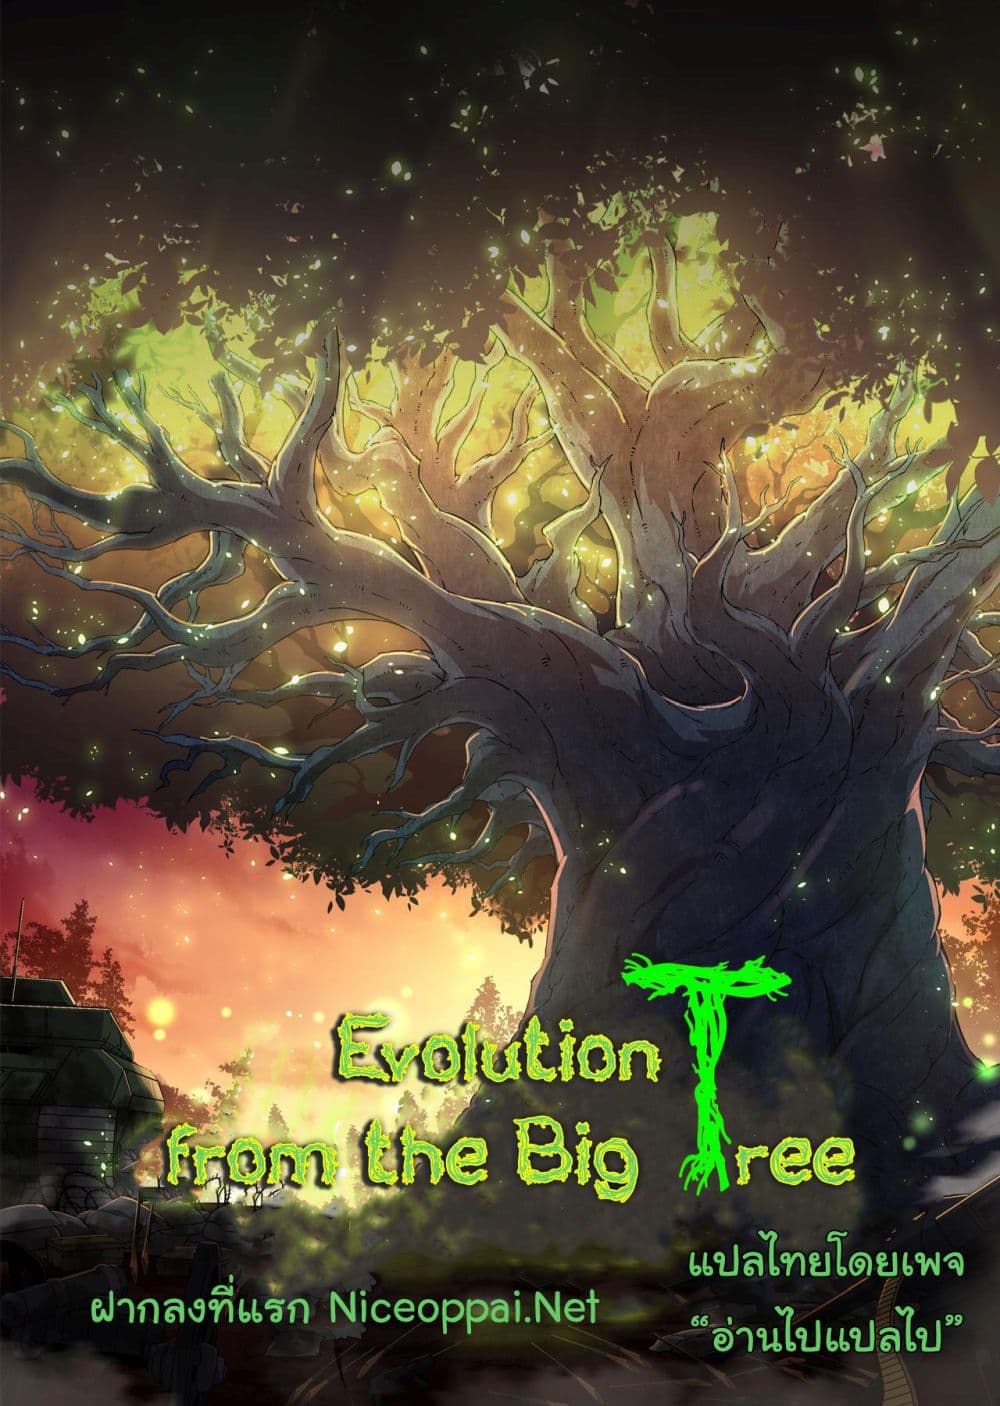 Evolution from the Big Tree Ã Â¸â€¢Ã Â¸Â­Ã Â¸â„¢Ã Â¸â€”Ã Â¸ÂµÃ Â¹Ë† 32 (1)